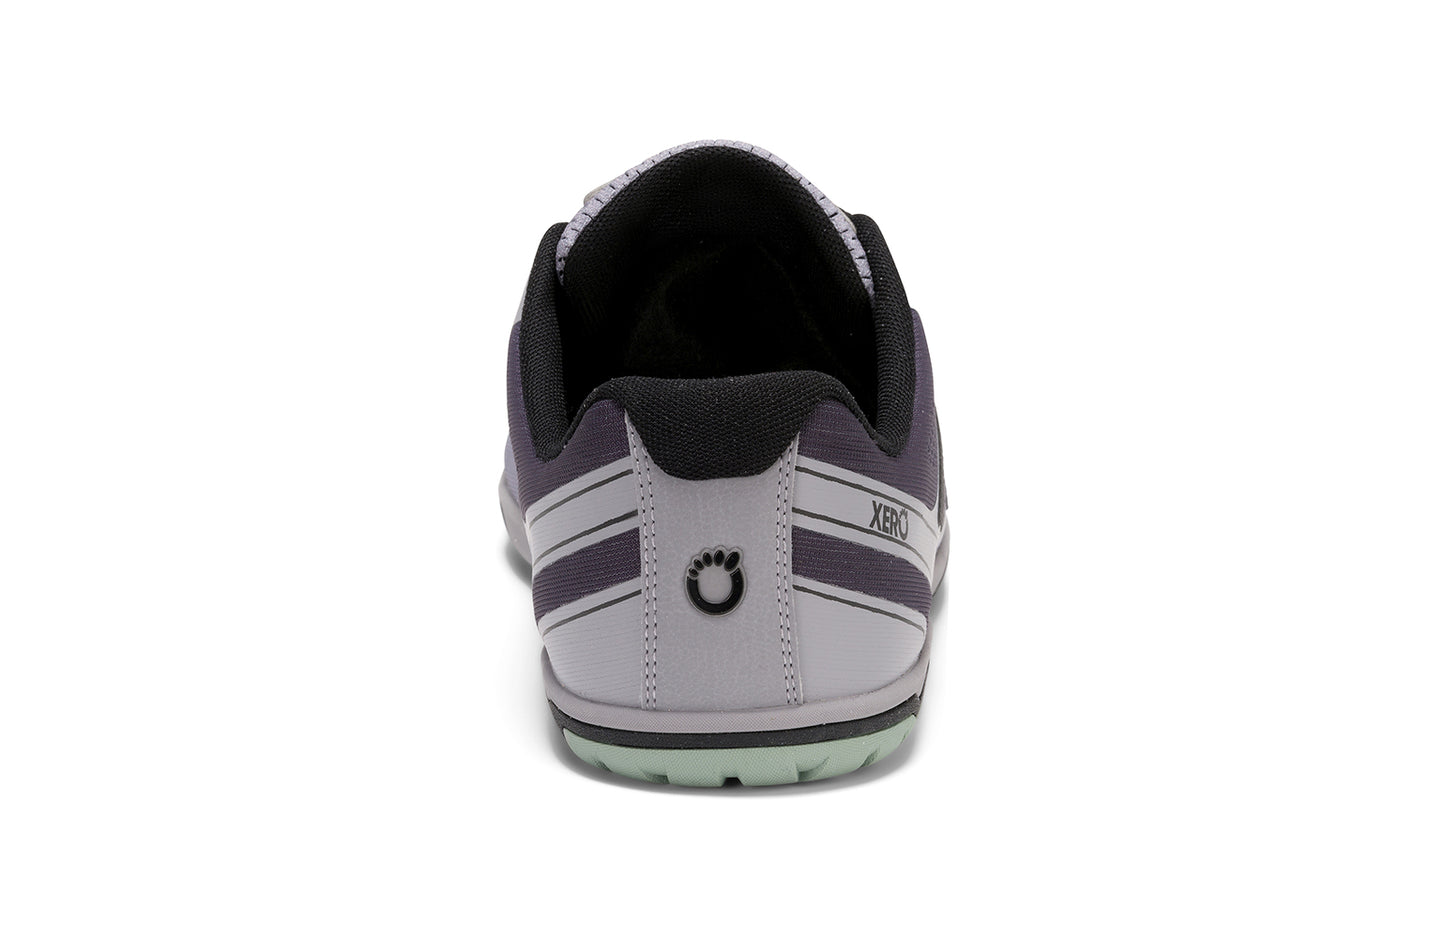 Xero Shoes - HFS II - Asphalt/Alloy - Women's